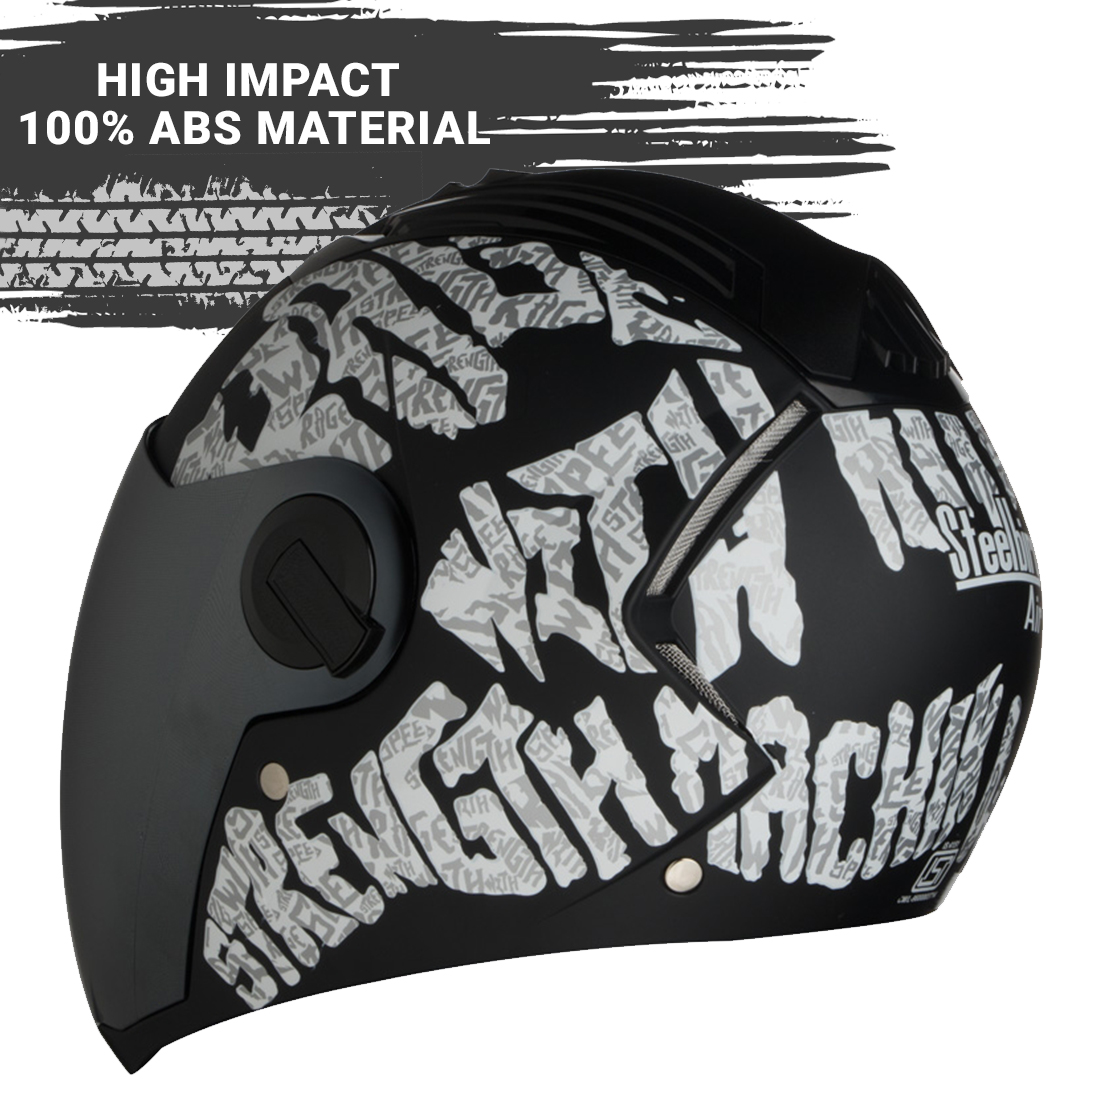 Steelbird SBA-2 Strength Stylish Bike Full Face Helmet (Matt Black White With Chrome Silver Visor)